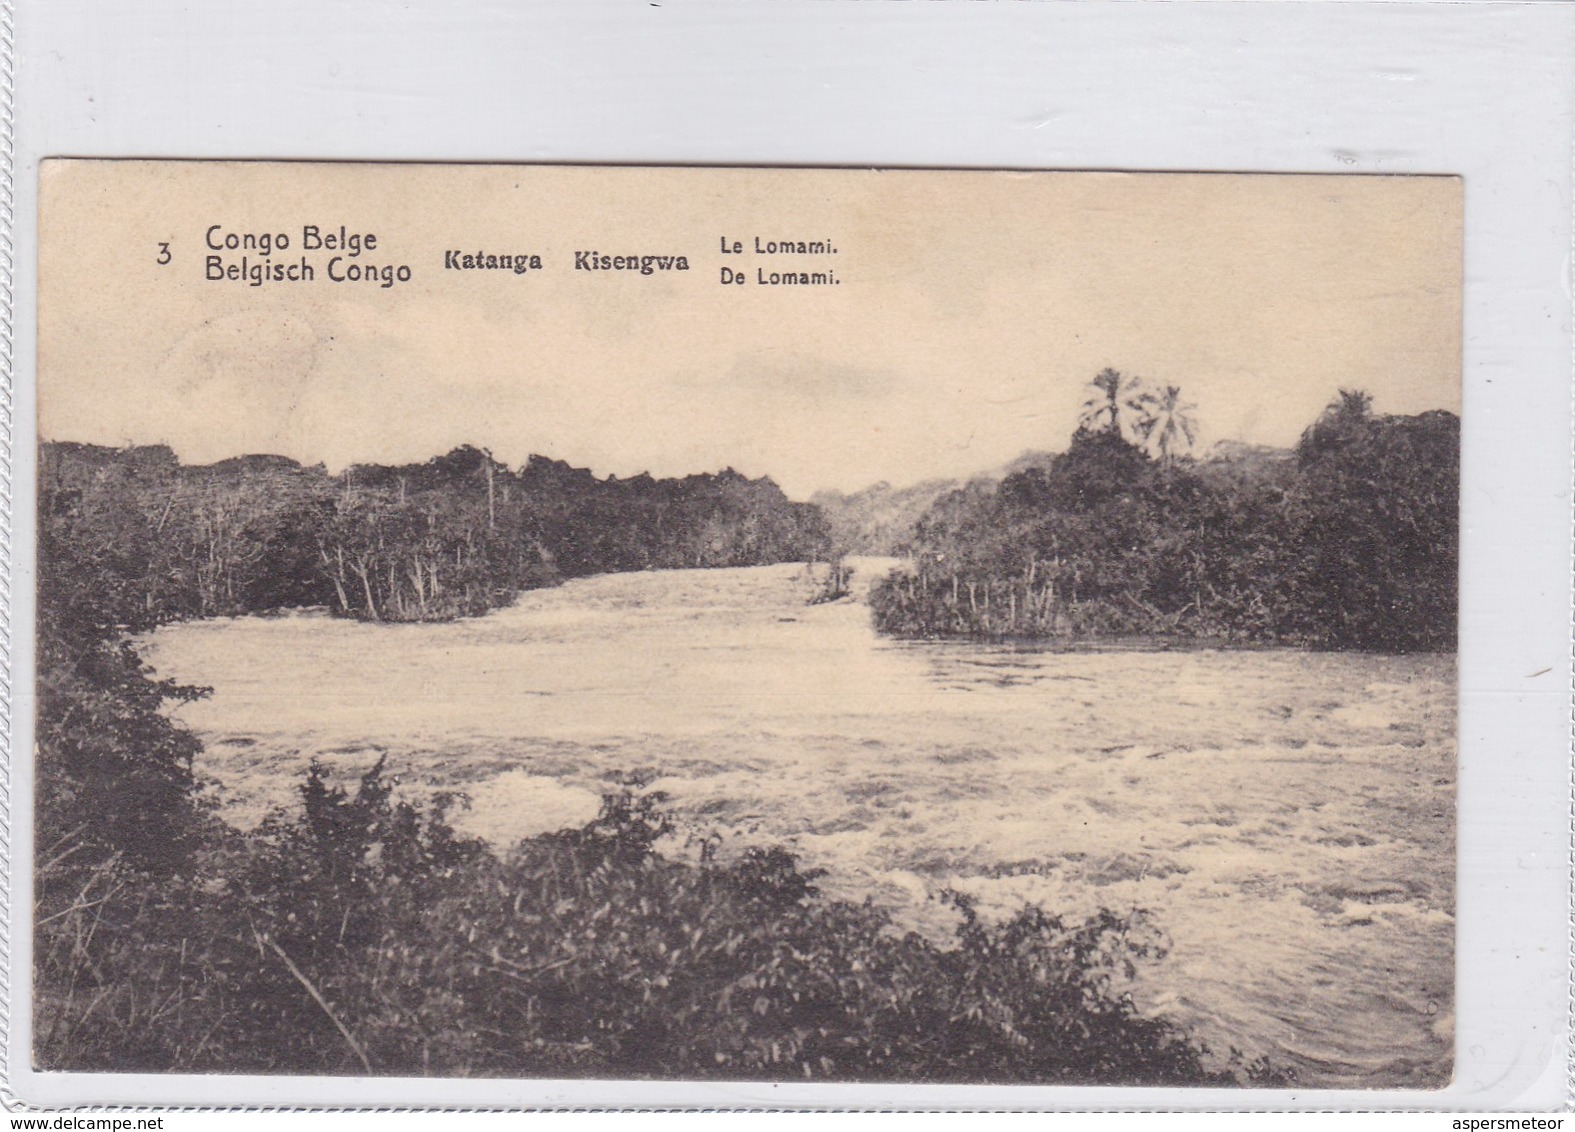 CONGO BELGE. KATANGA KISENGWA. LE LOMAMI. CIRCULEE A BELGIQUE AN 1913 - BLEUP - Enteros Postales